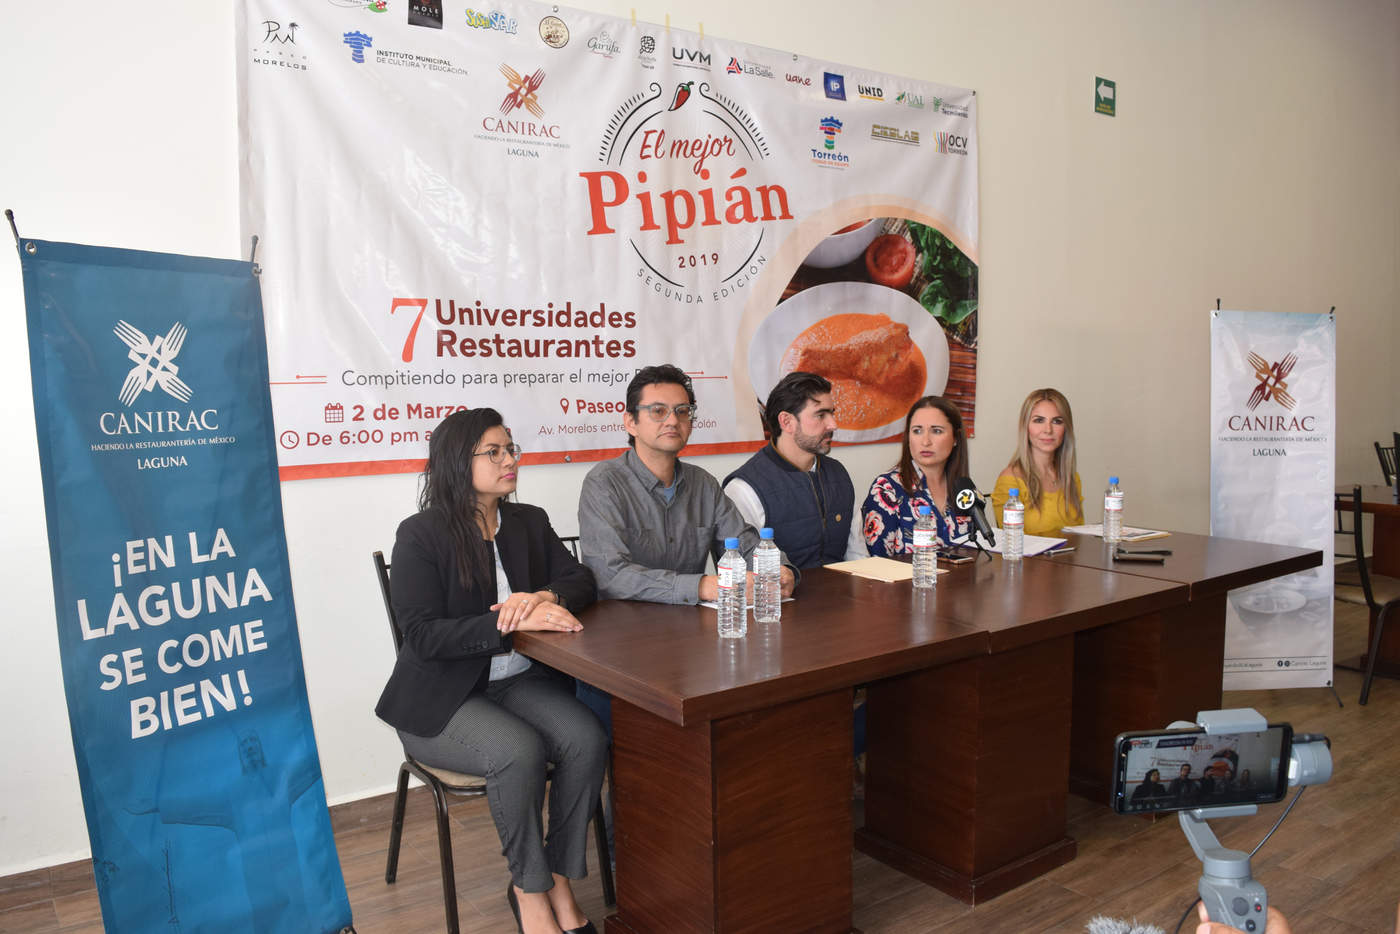 La Canirac, OCV, en coordinación con la Dirección Municipal de Cultura preparan la segunda edición de la degustación del pipián. (MARY VÁZQUEZ)